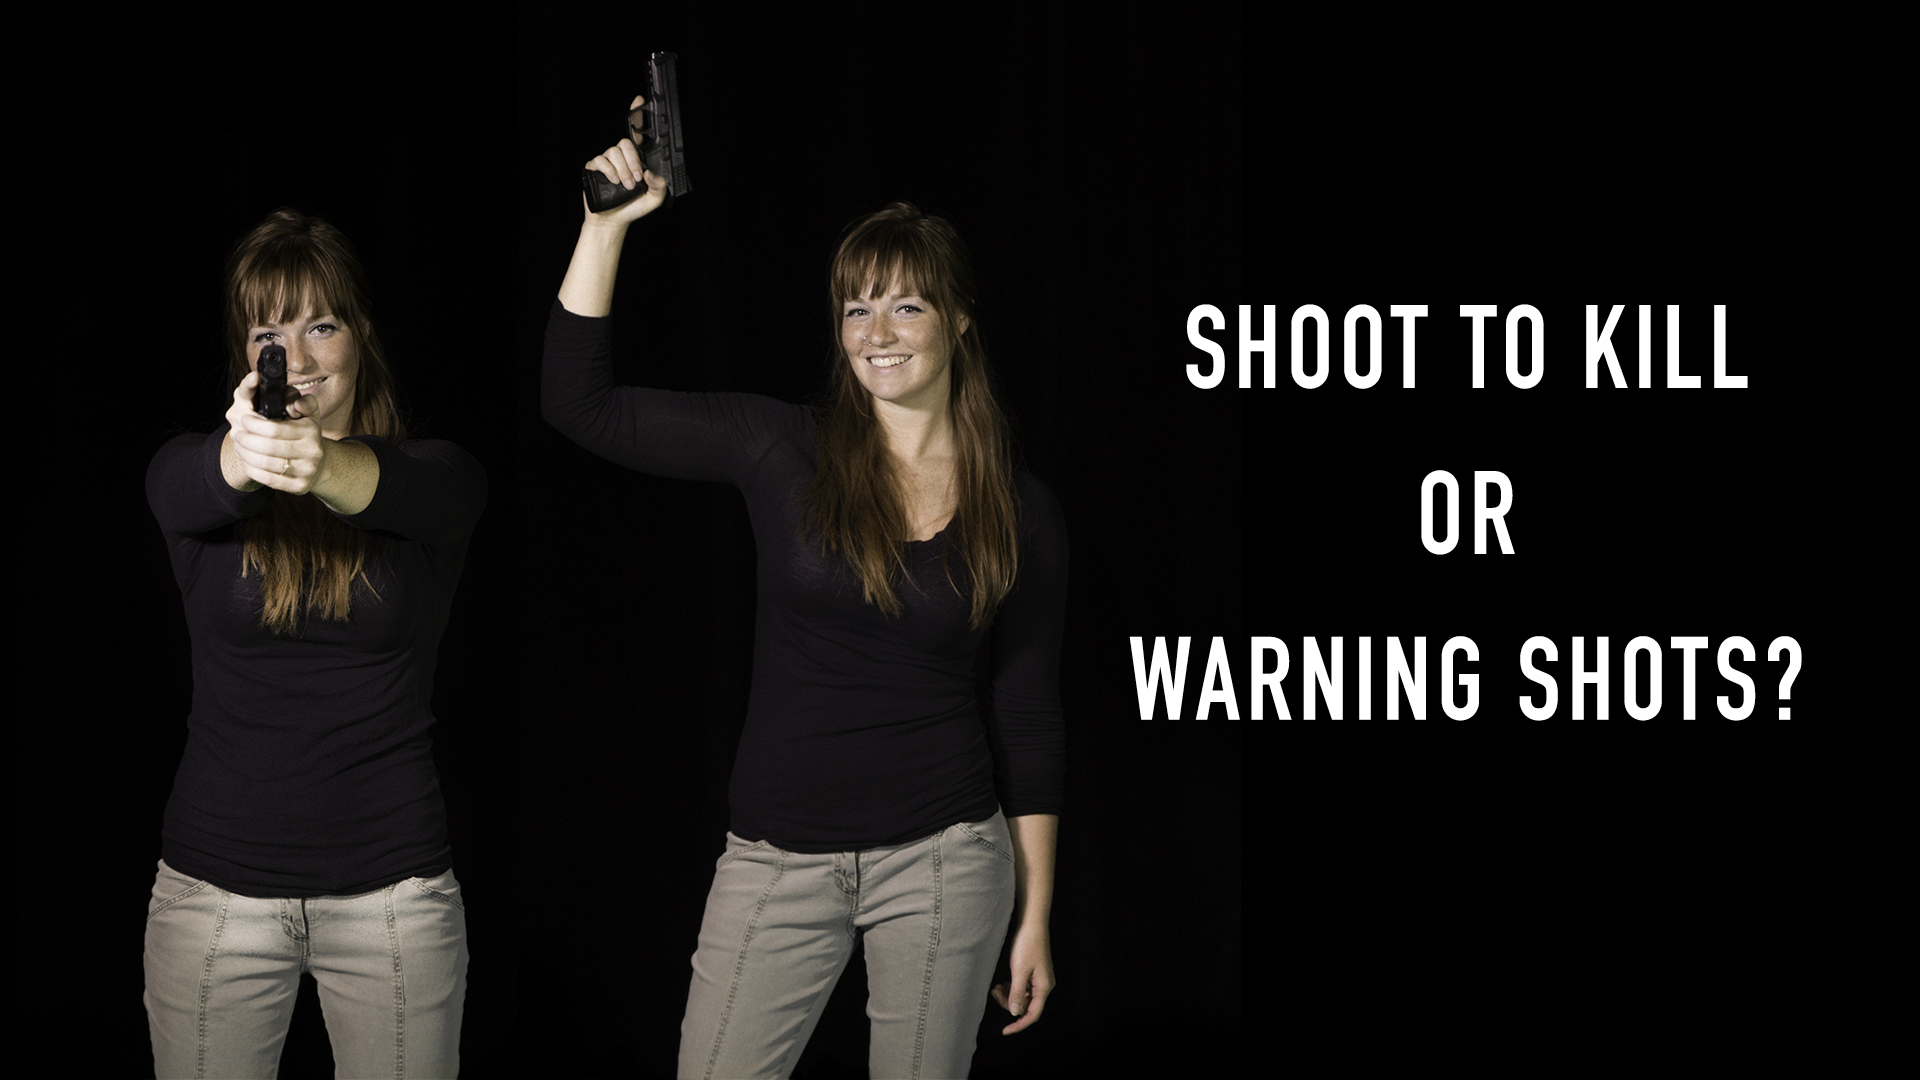 warning shots or shoot to kill